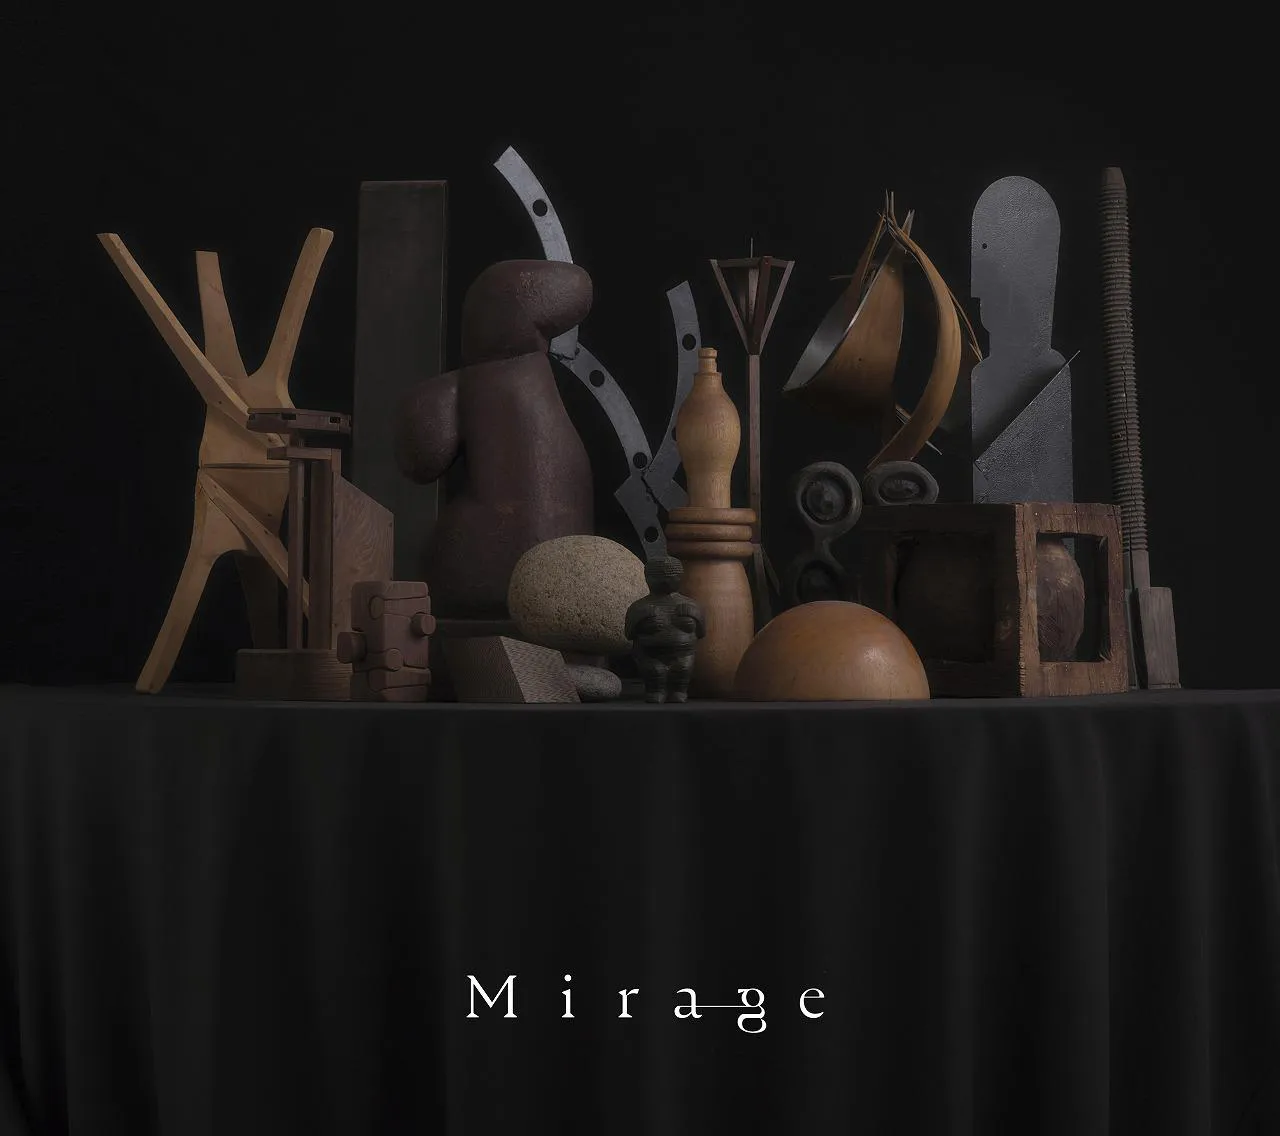 「Mirage」が収録される予定のアルバムジャケット